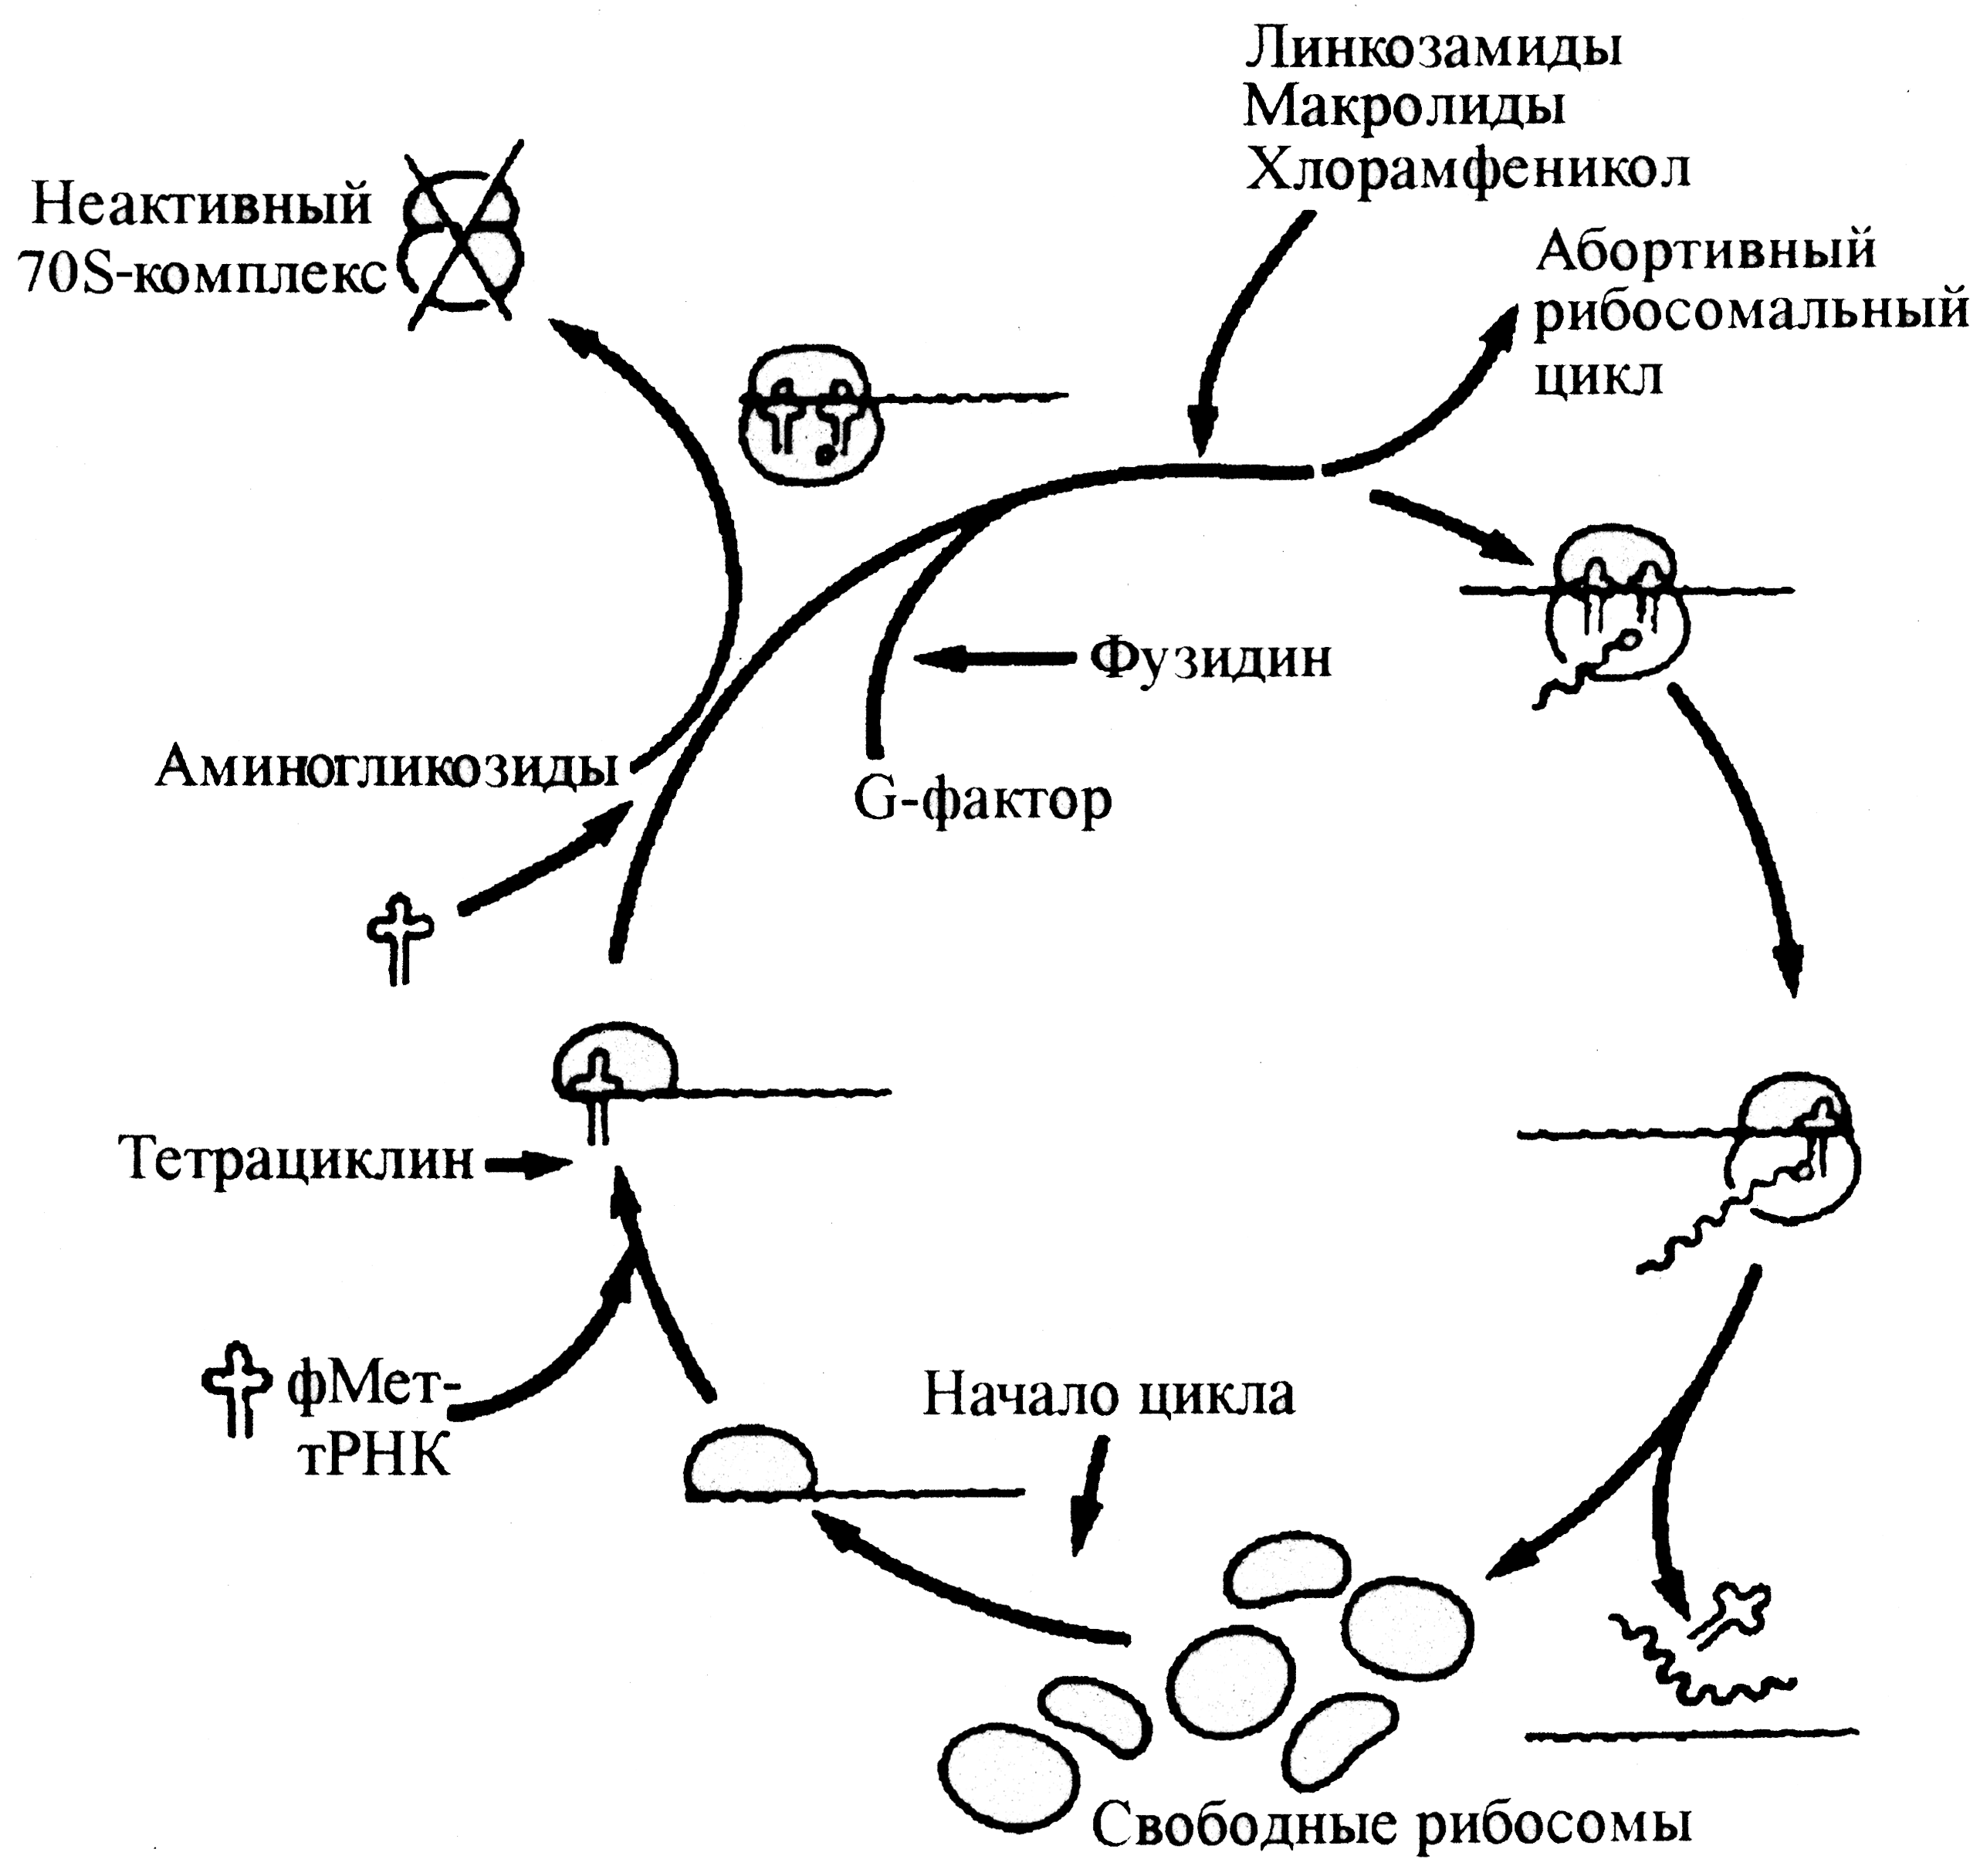 Рис. 10. Антибиотическая блокада рибосомального цикла бактерий. Нормальный цикл складывается из объединения 30S- и 50S-субъединиц рибосом с образованием 70S-рибосомального комплекса, элонгации полипептидной цепи (по мере продвижения рибосомы вдоль матричной РНК) и высвобождения всех компонентов при завершении синтеза полипептида. Тетрациклины ингибируют связывание инициаторной формилметионилтранспортной РНК (фМет-тРНК). Аминогликозиды провоцируют образование функционально инертных инициаторных комплексов («мертвые» 70S-рибосомы). Фузидиновая кислота (фузидин) ингибирует фактор элонгации G, блокируя перемещение рибосом по мРНК. Действие хлорамфеникола, макролидов, линкозамидов связано с преждевременной диссоциацией активного комплекса (абортивный цикл)